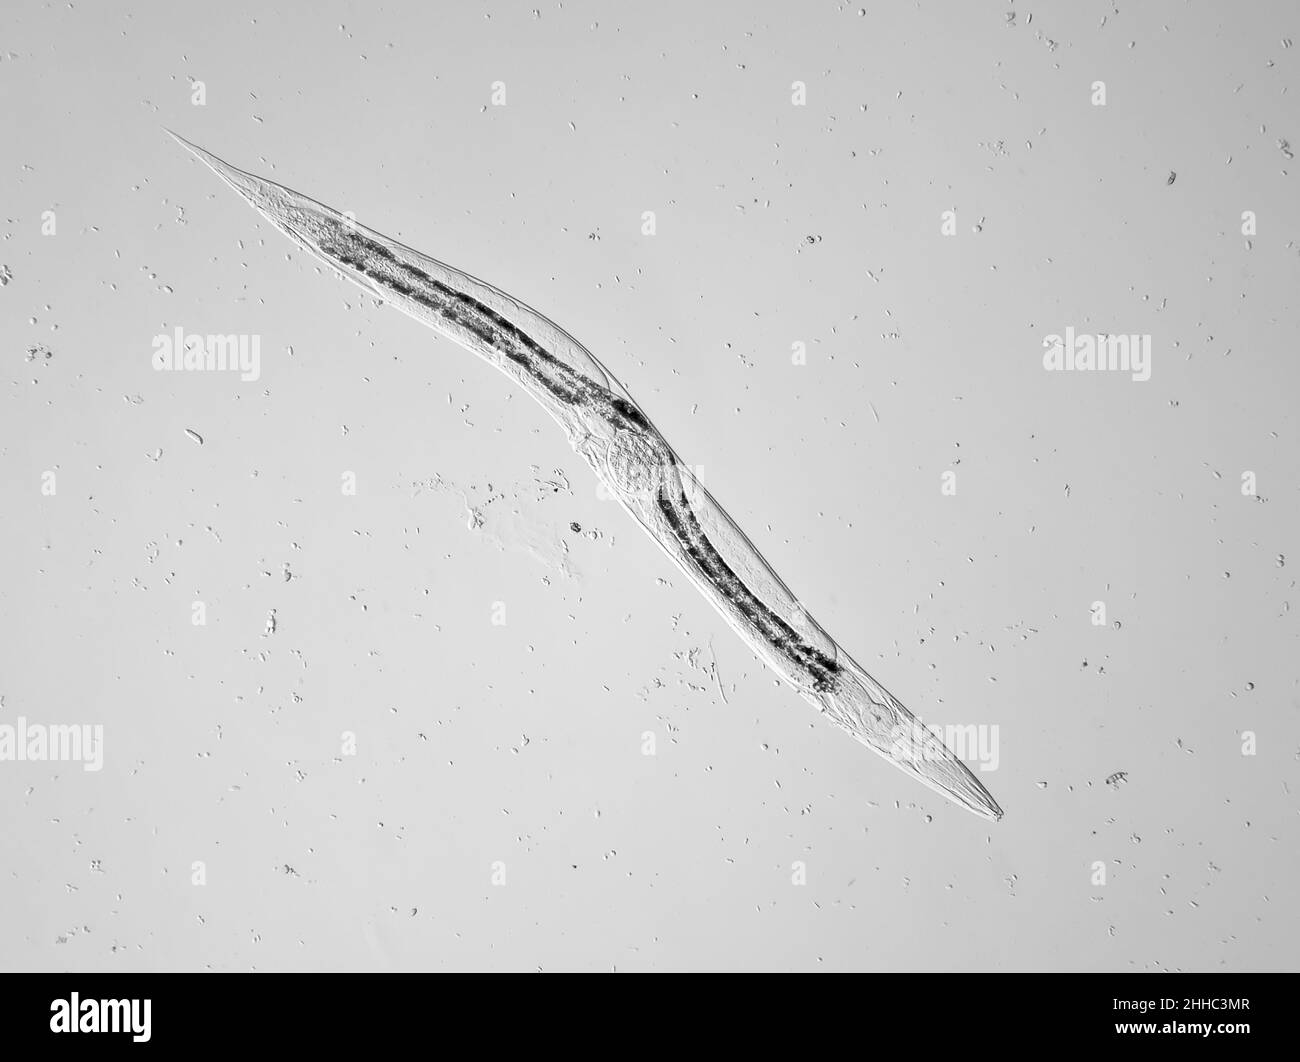 Gusano nematodo microscópico de vida libre (con un huevo dentro) del suelo del jardín, posiblemente Panagrellus sp., el campo de visión horizontal es de aproximadamente 1,1mm Foto de stock